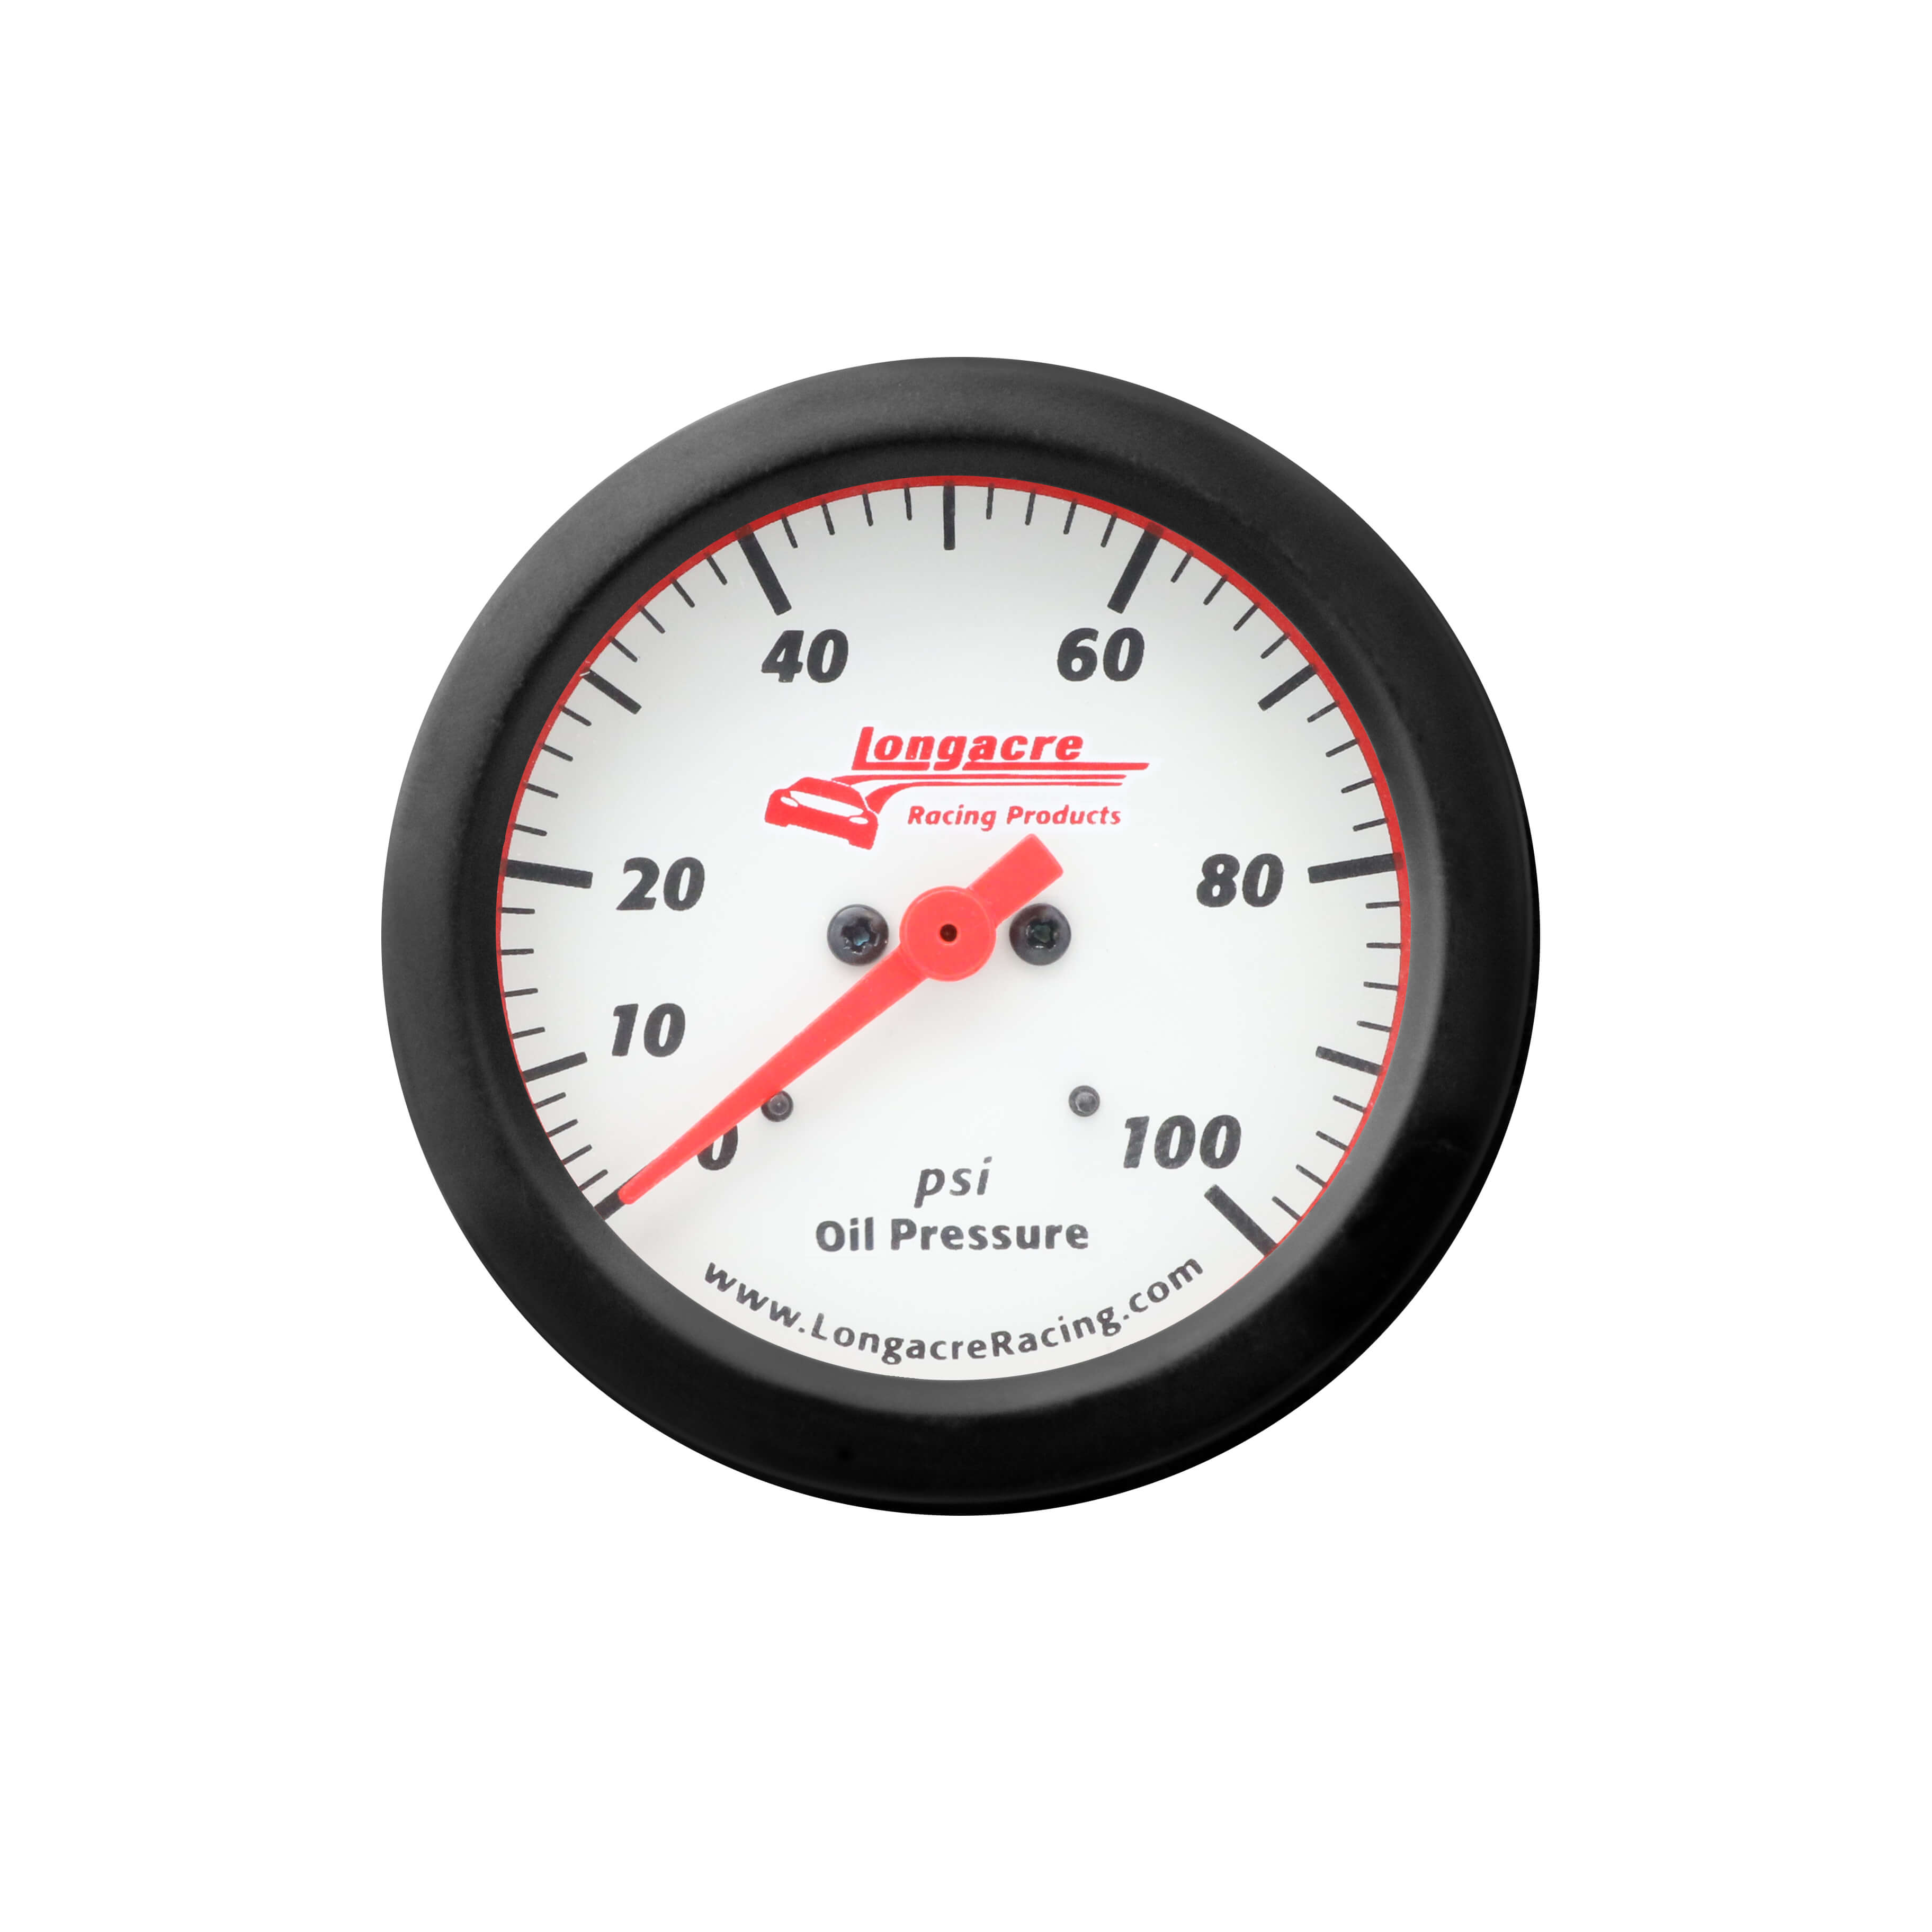 Sportsman™ Elite Oil Pressure Gauge 0-100 psi